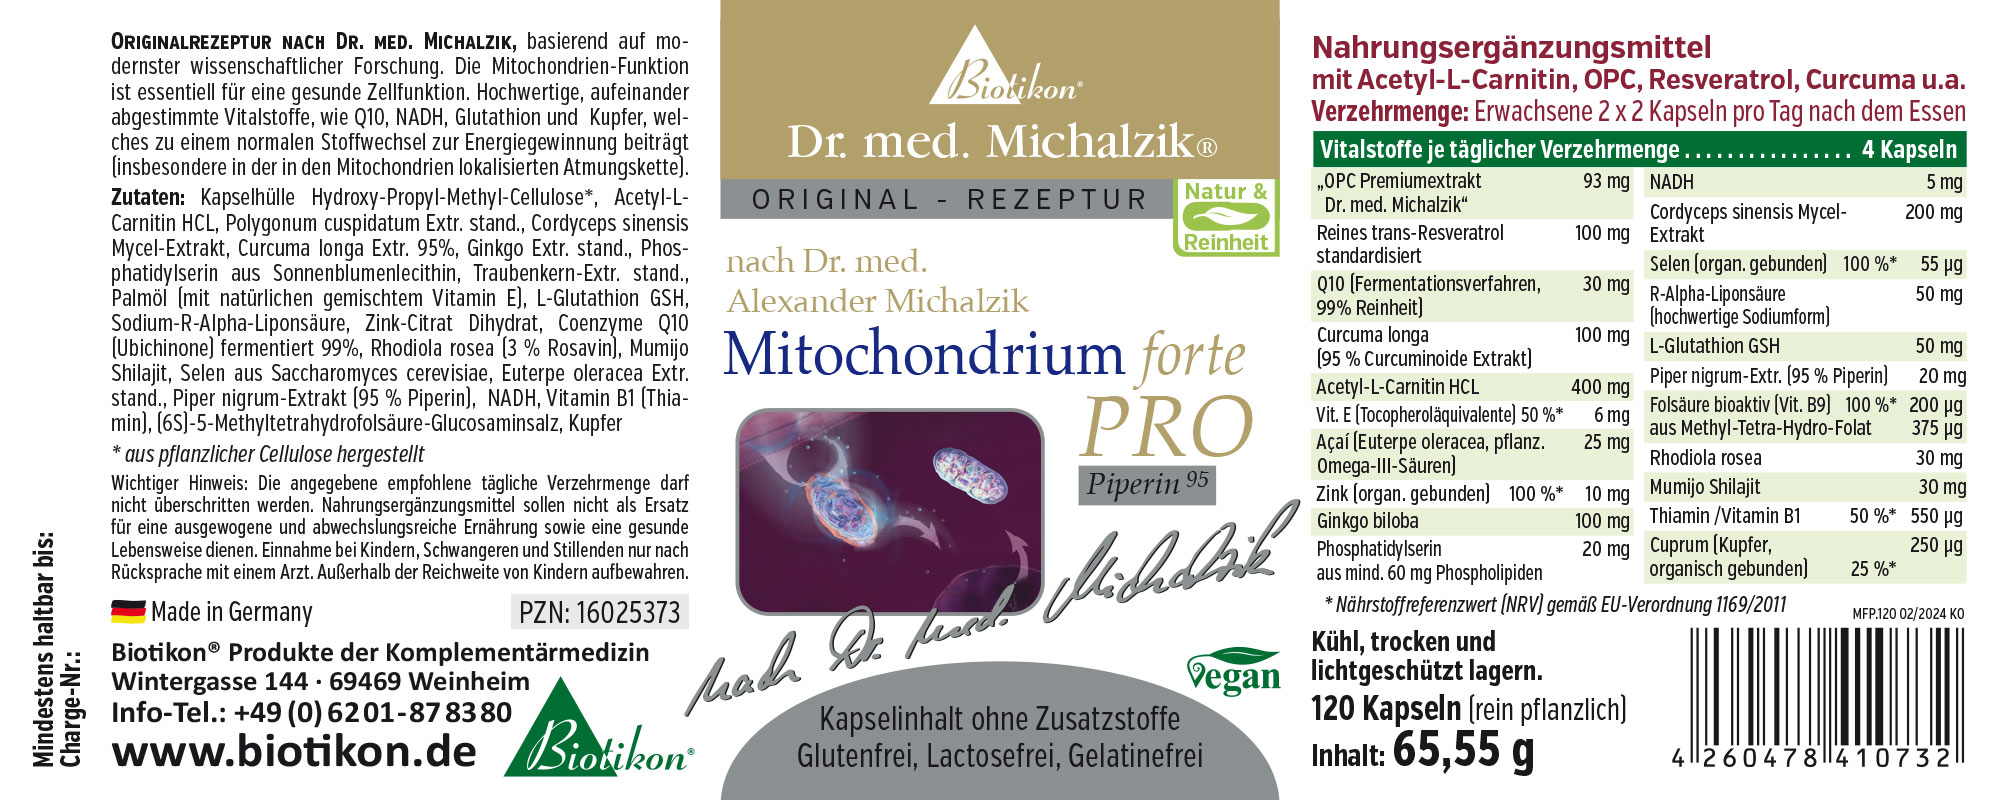 Mitochondrium forte PRO + PQQ - Bundle